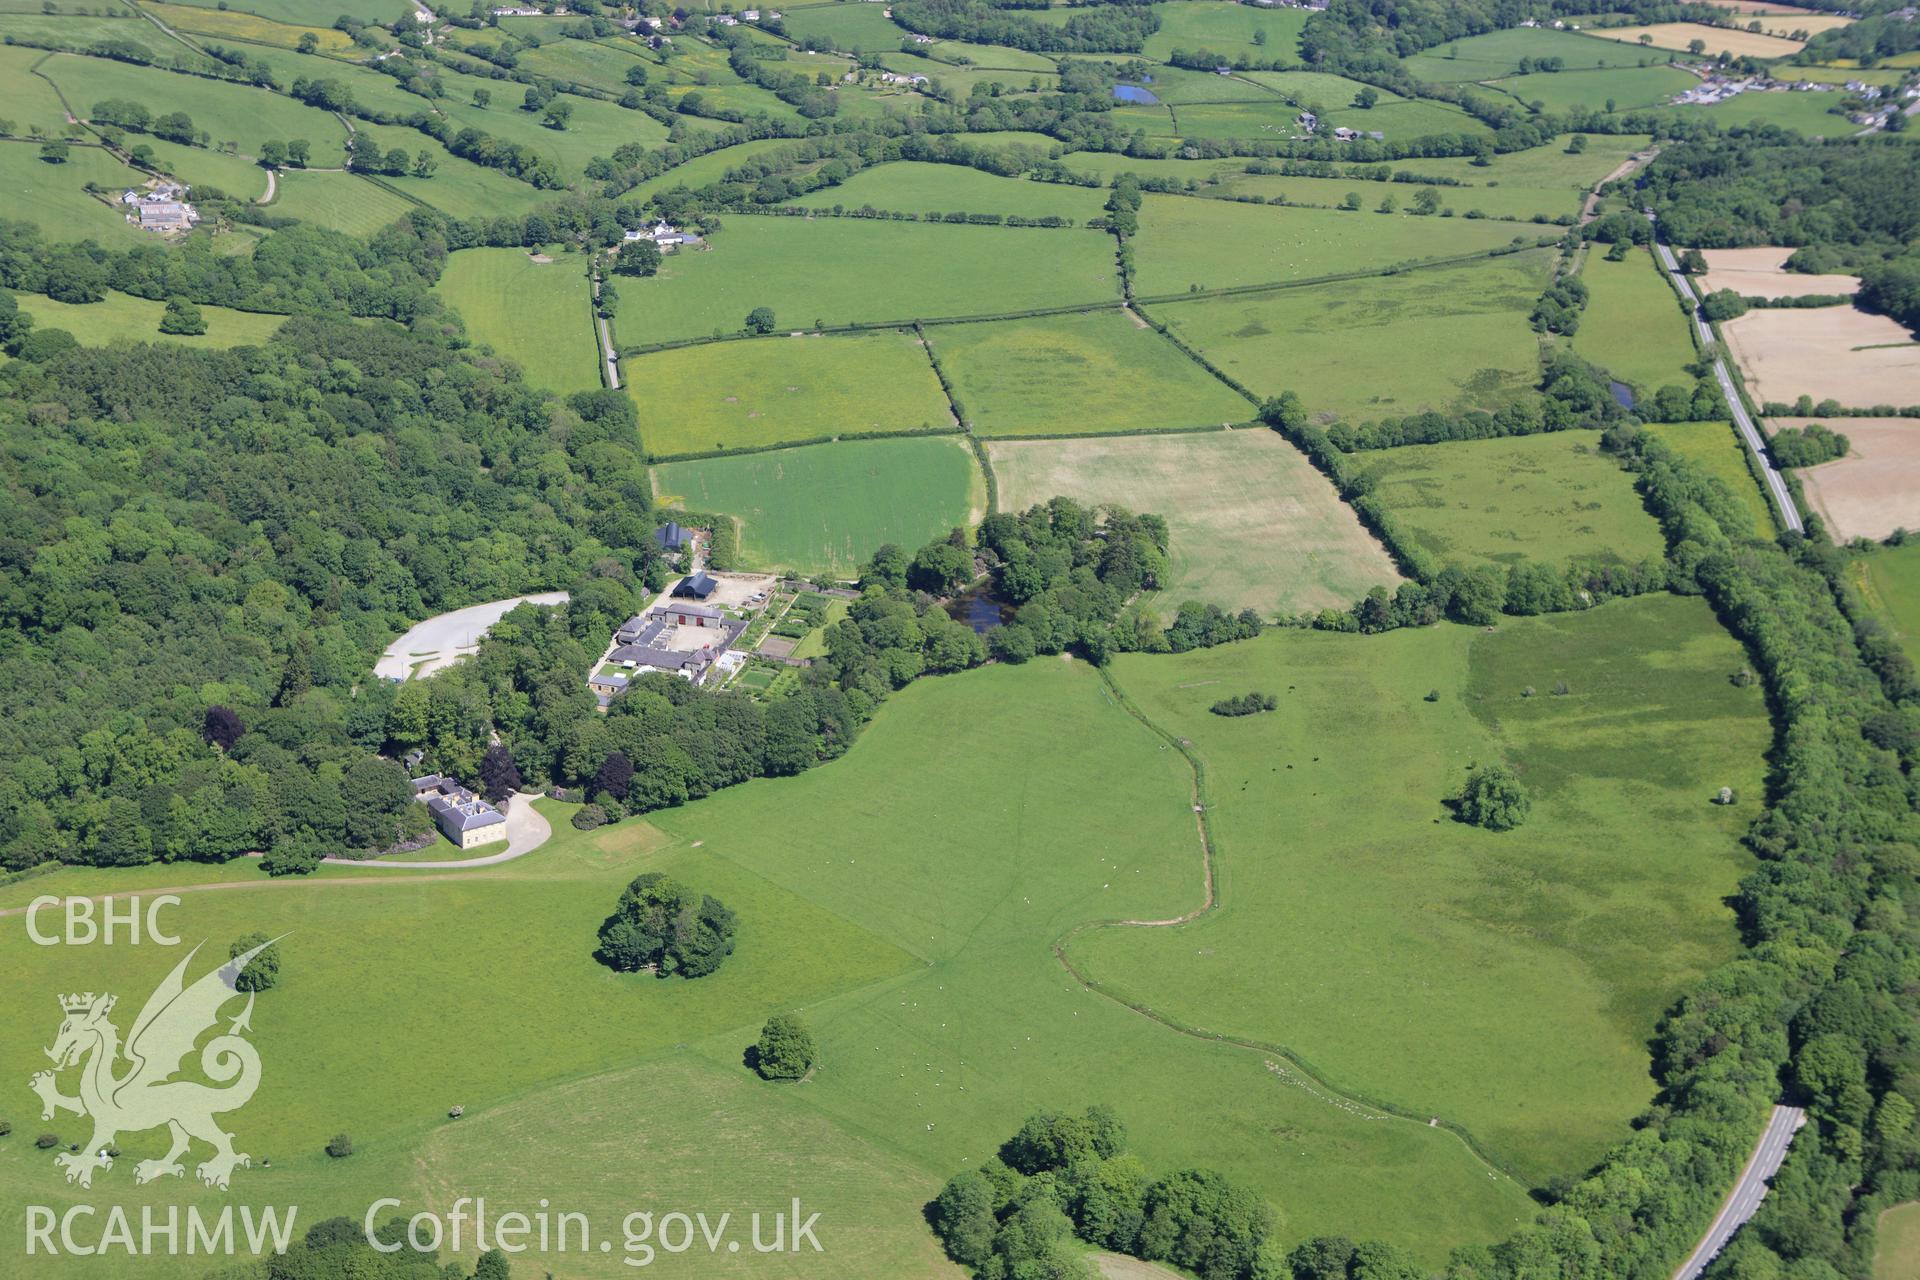 RCAHMW colour oblique aerial photograph of Llanerchaeron House, Plas Llanerchaeron. Taken on 01 June 2009 by Toby Driver